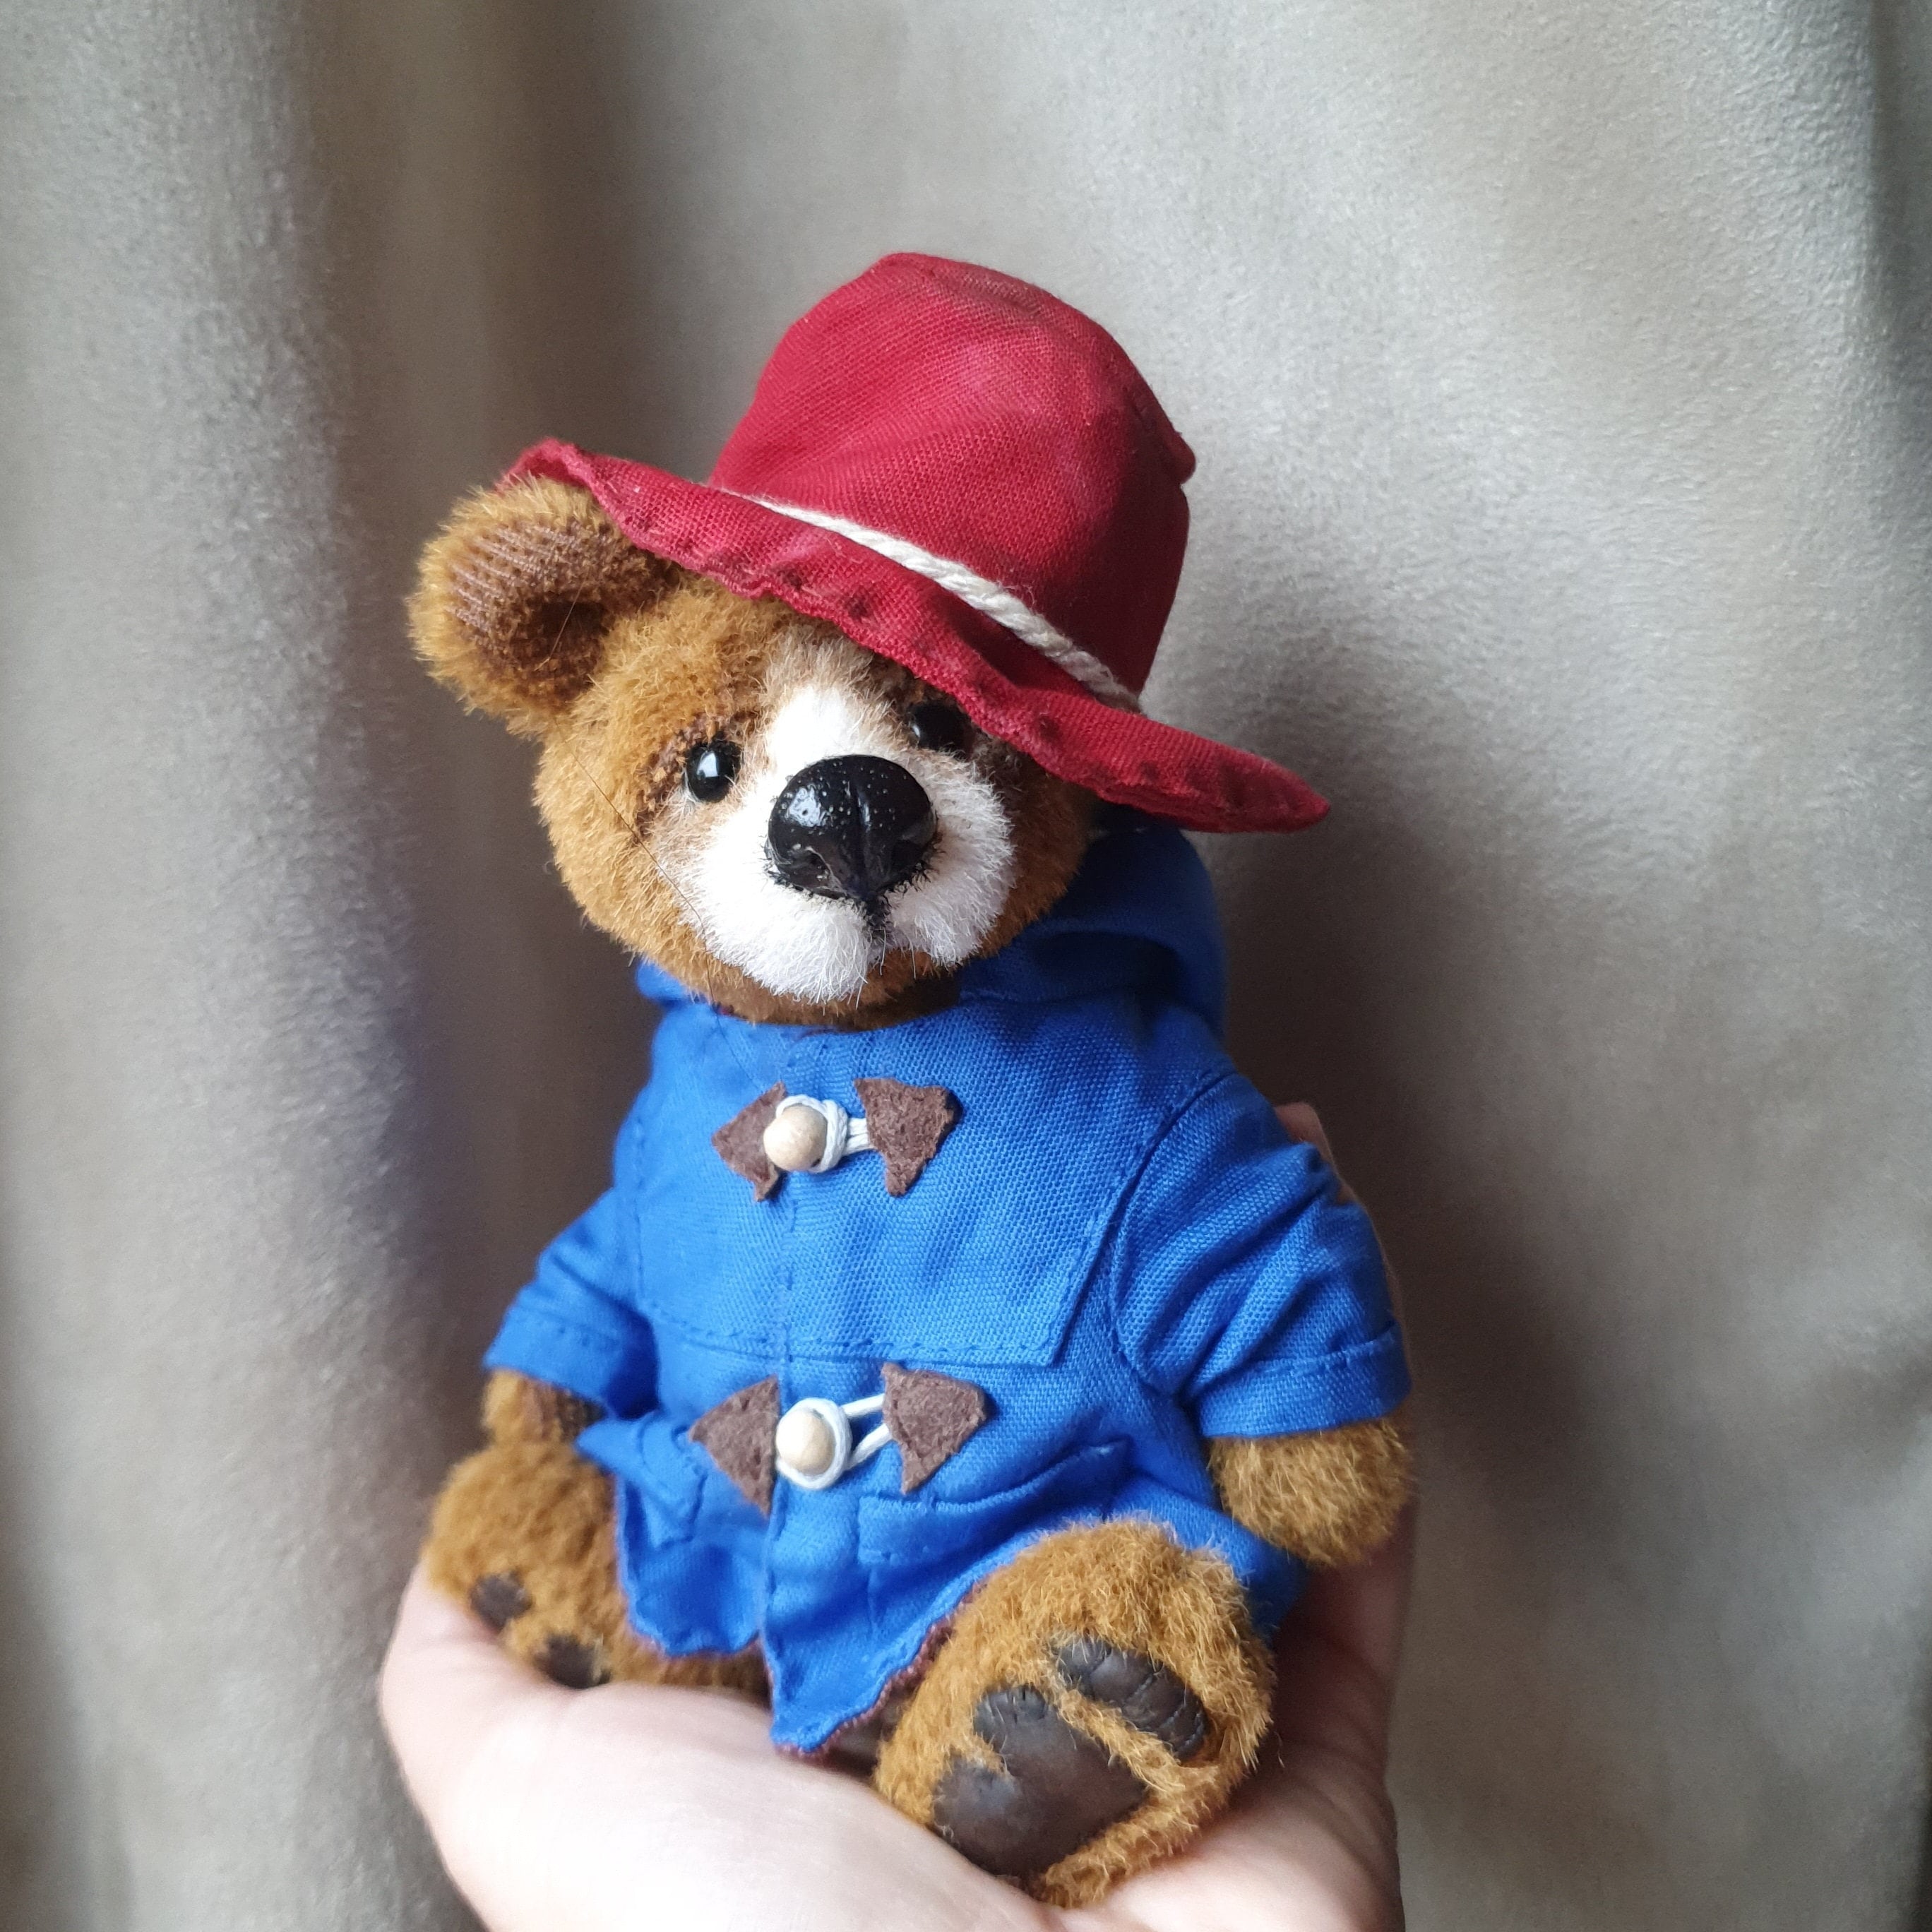 Oso Paddington - Peluche PADDINGTON Bear de edición limitada de 14